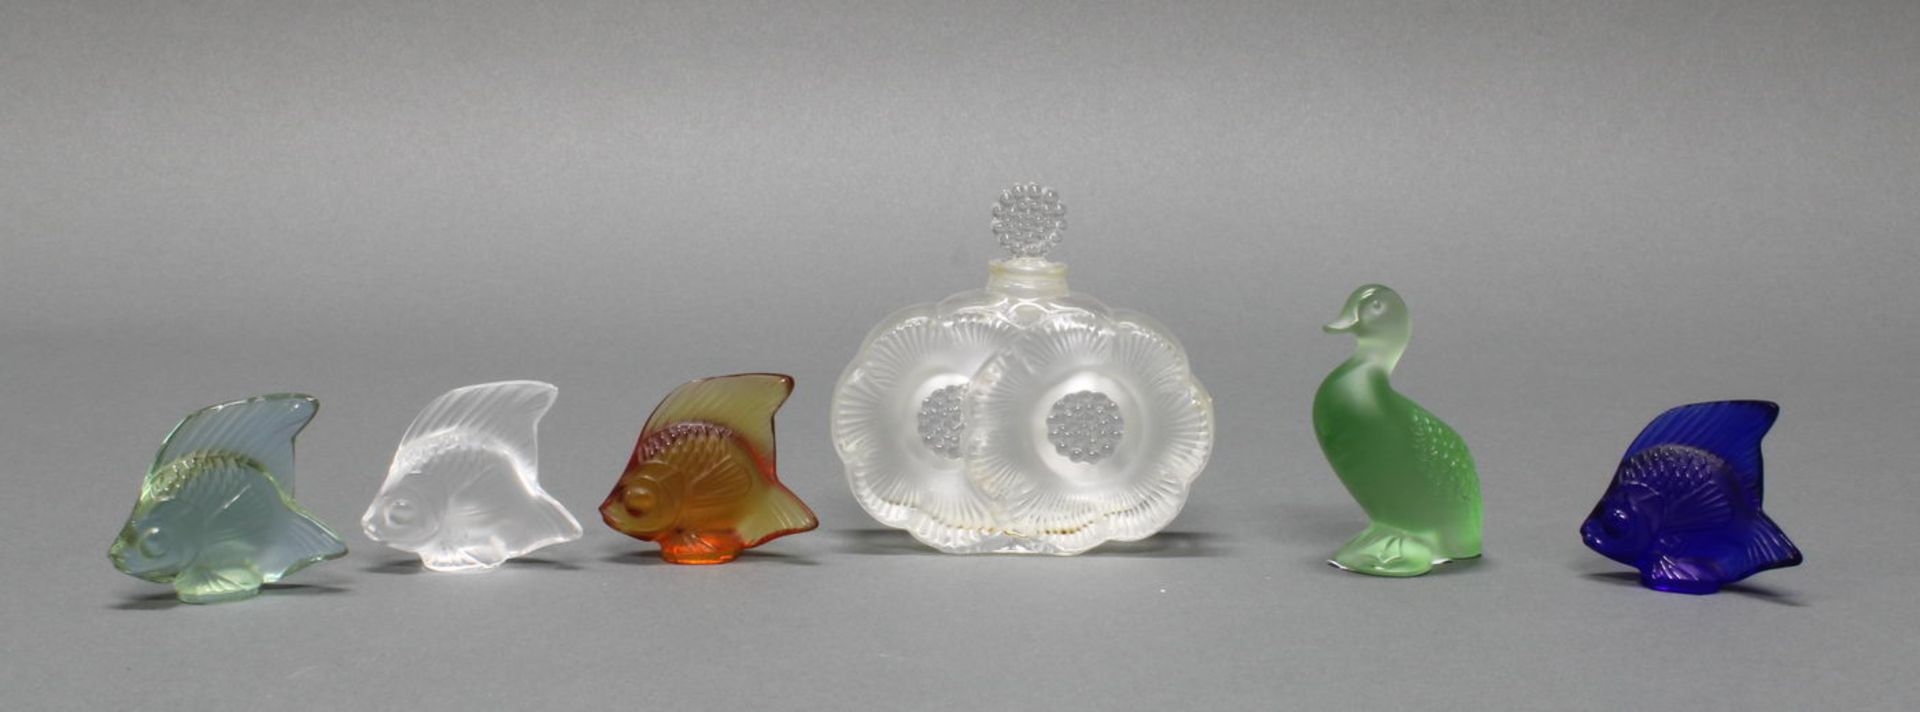 Flakon, "Deux fleurs", Lalique, farbloses Glas, teils mattiert, bezeichnet Lalique France, 9 cm hoc